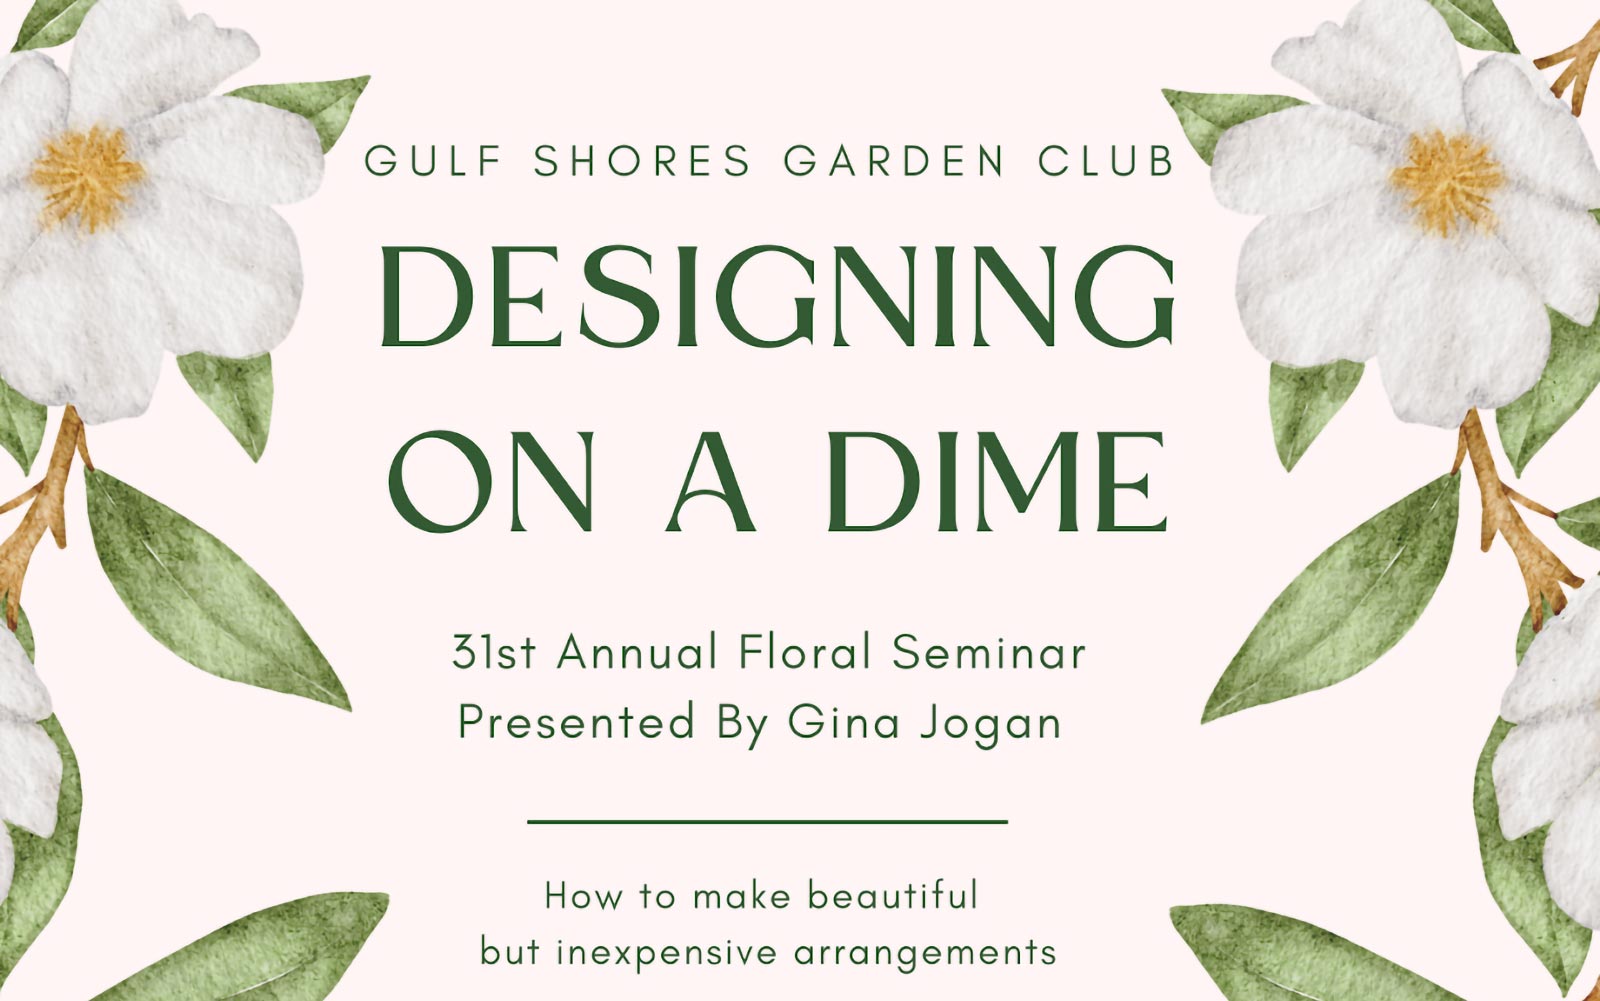 Gulf Shores Garden Club Seminar Announced